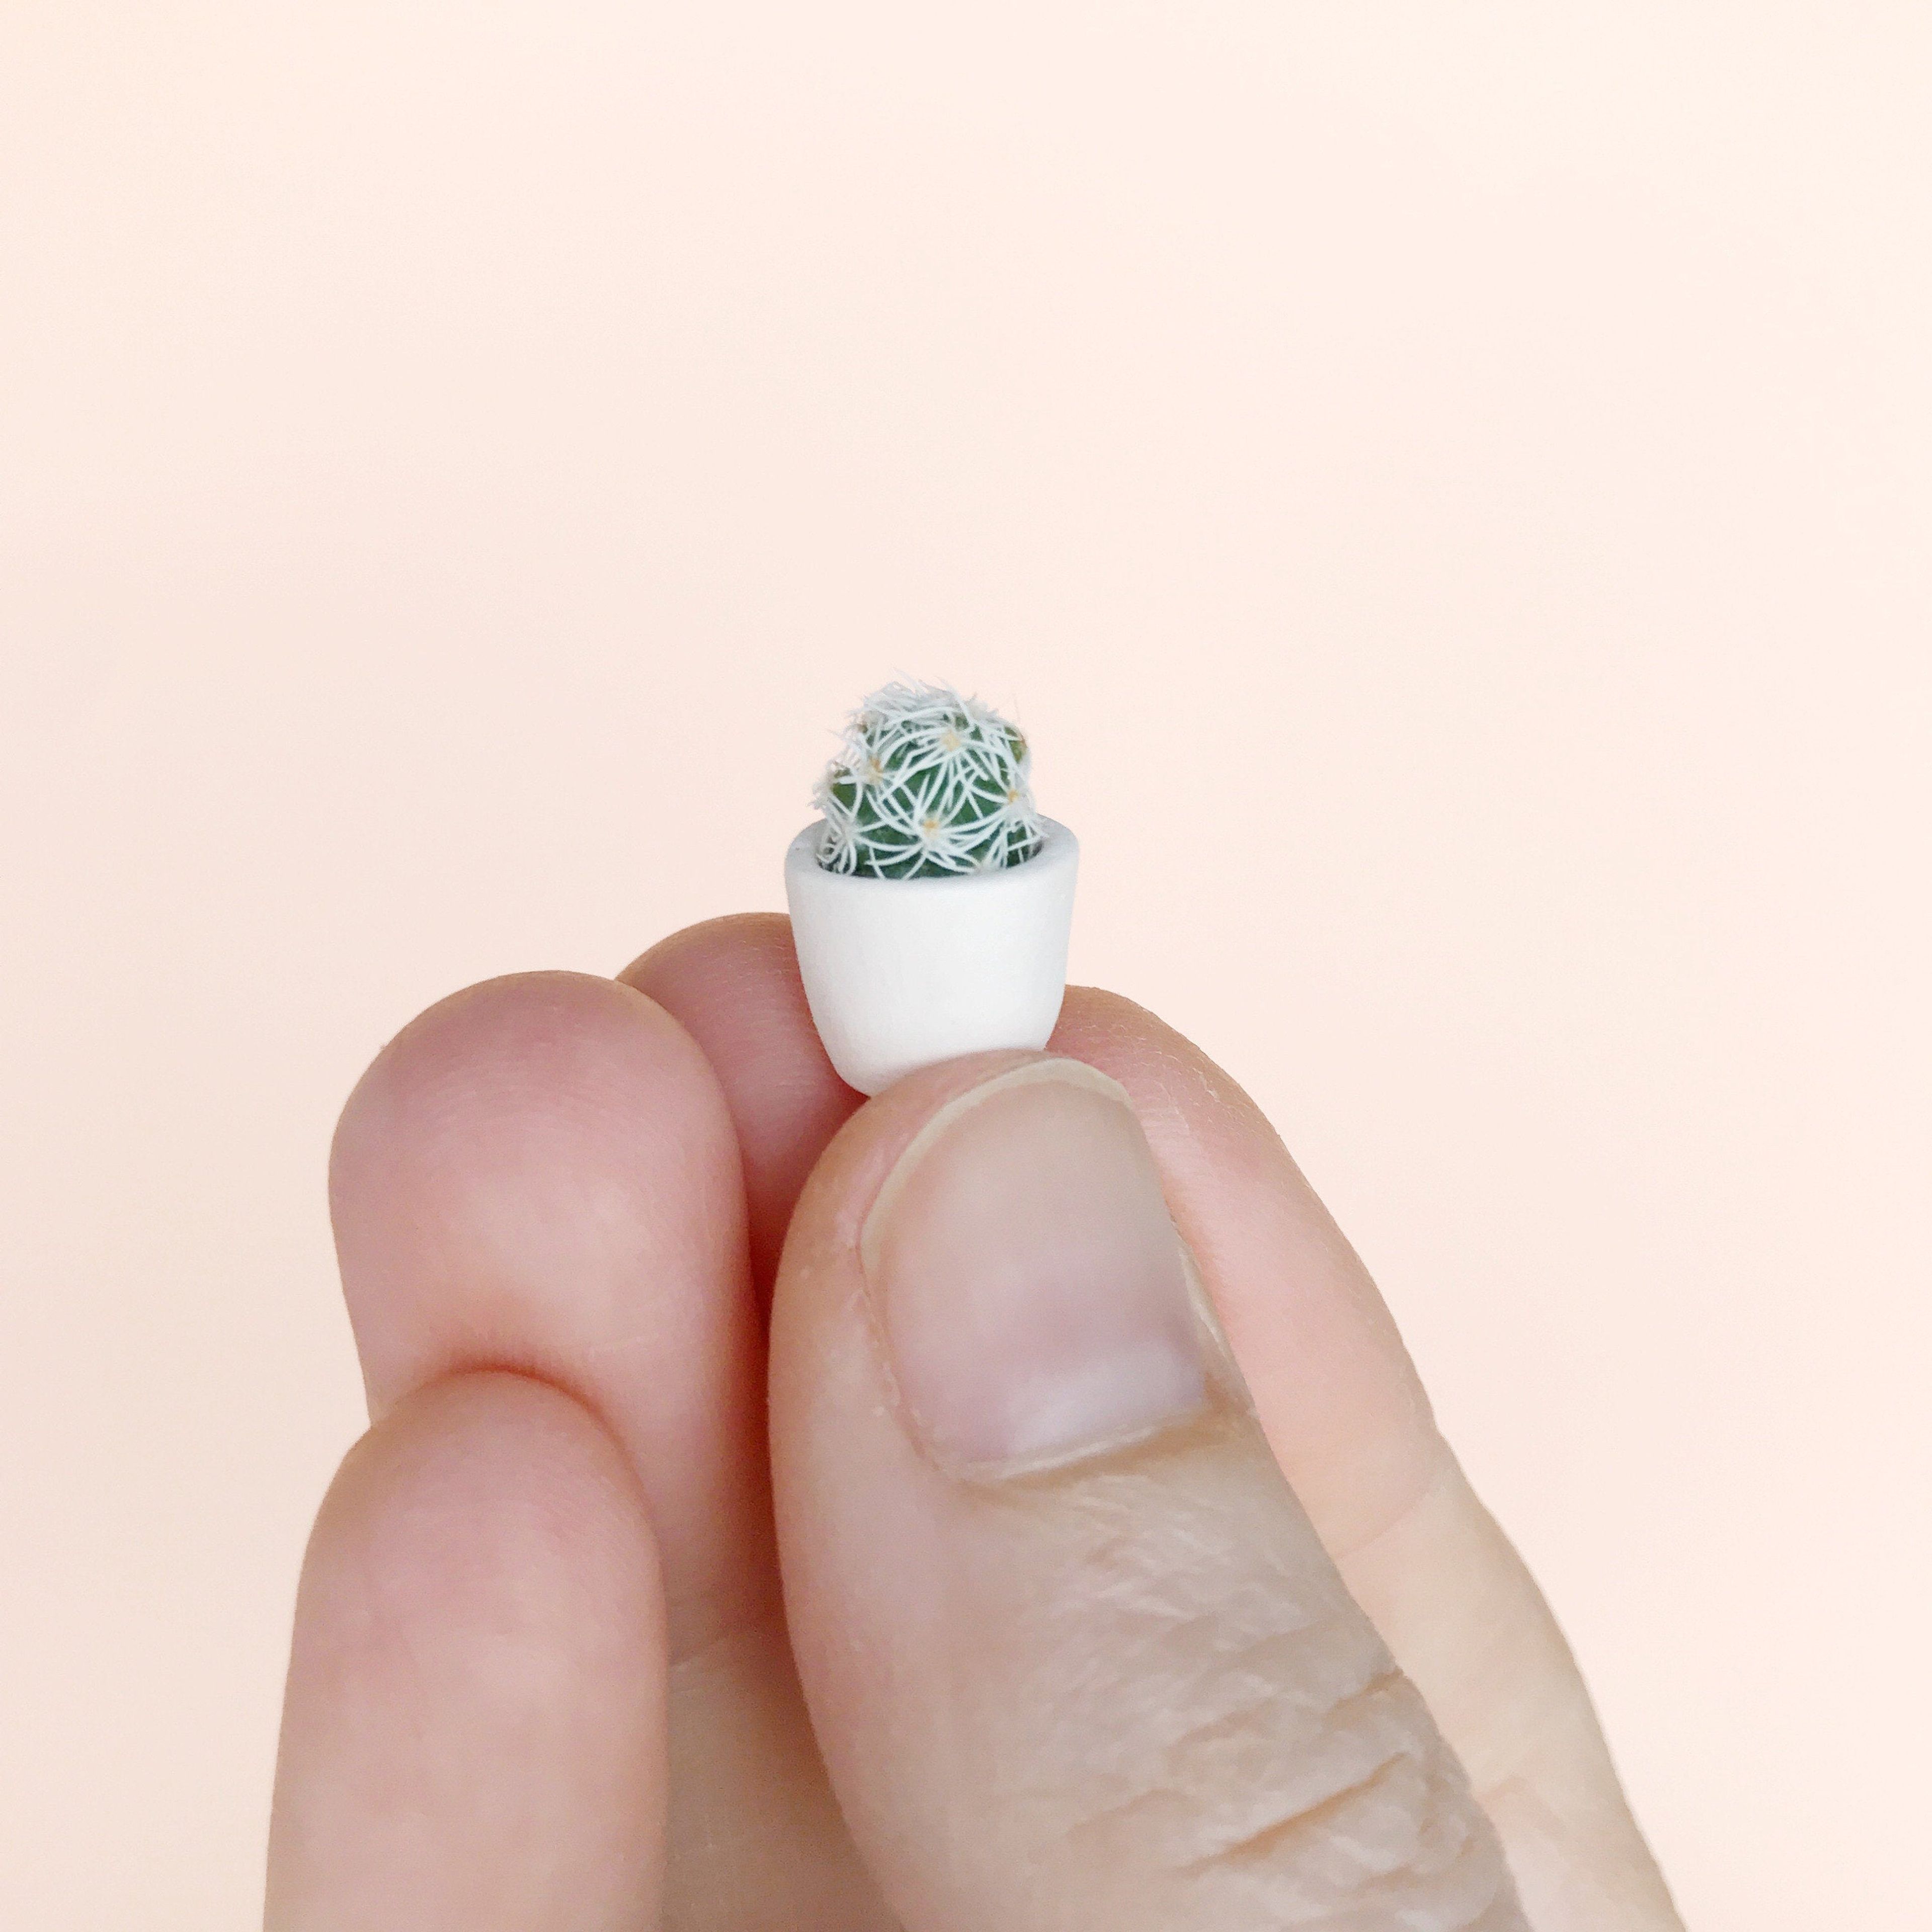 SURPRISE! Micro Mini Cactus + Handmade Ceramic Planter